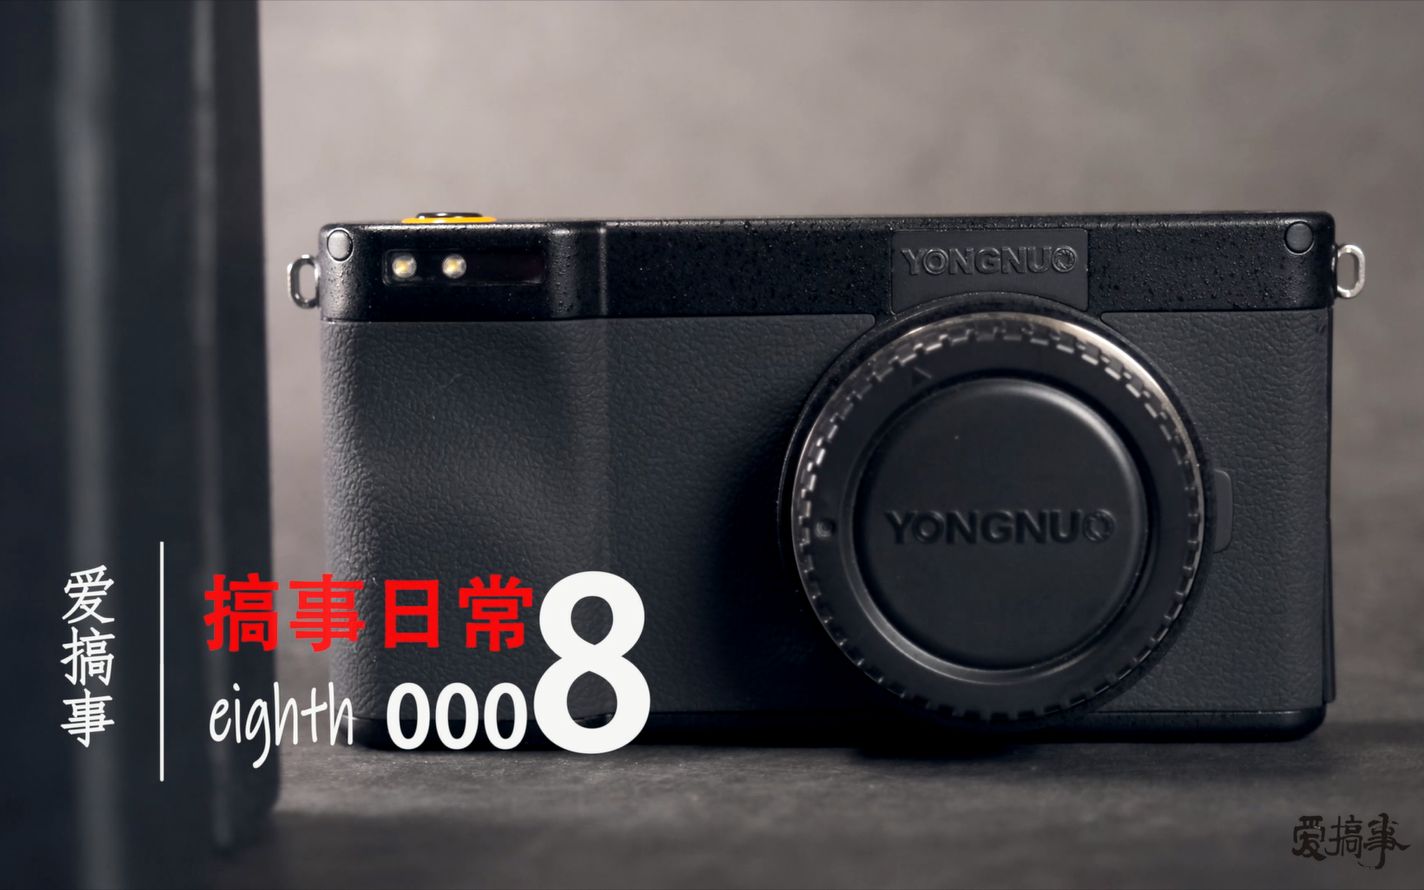 能打电话的相机or能换镜头的手机——安卓相机永诺YN450M体验